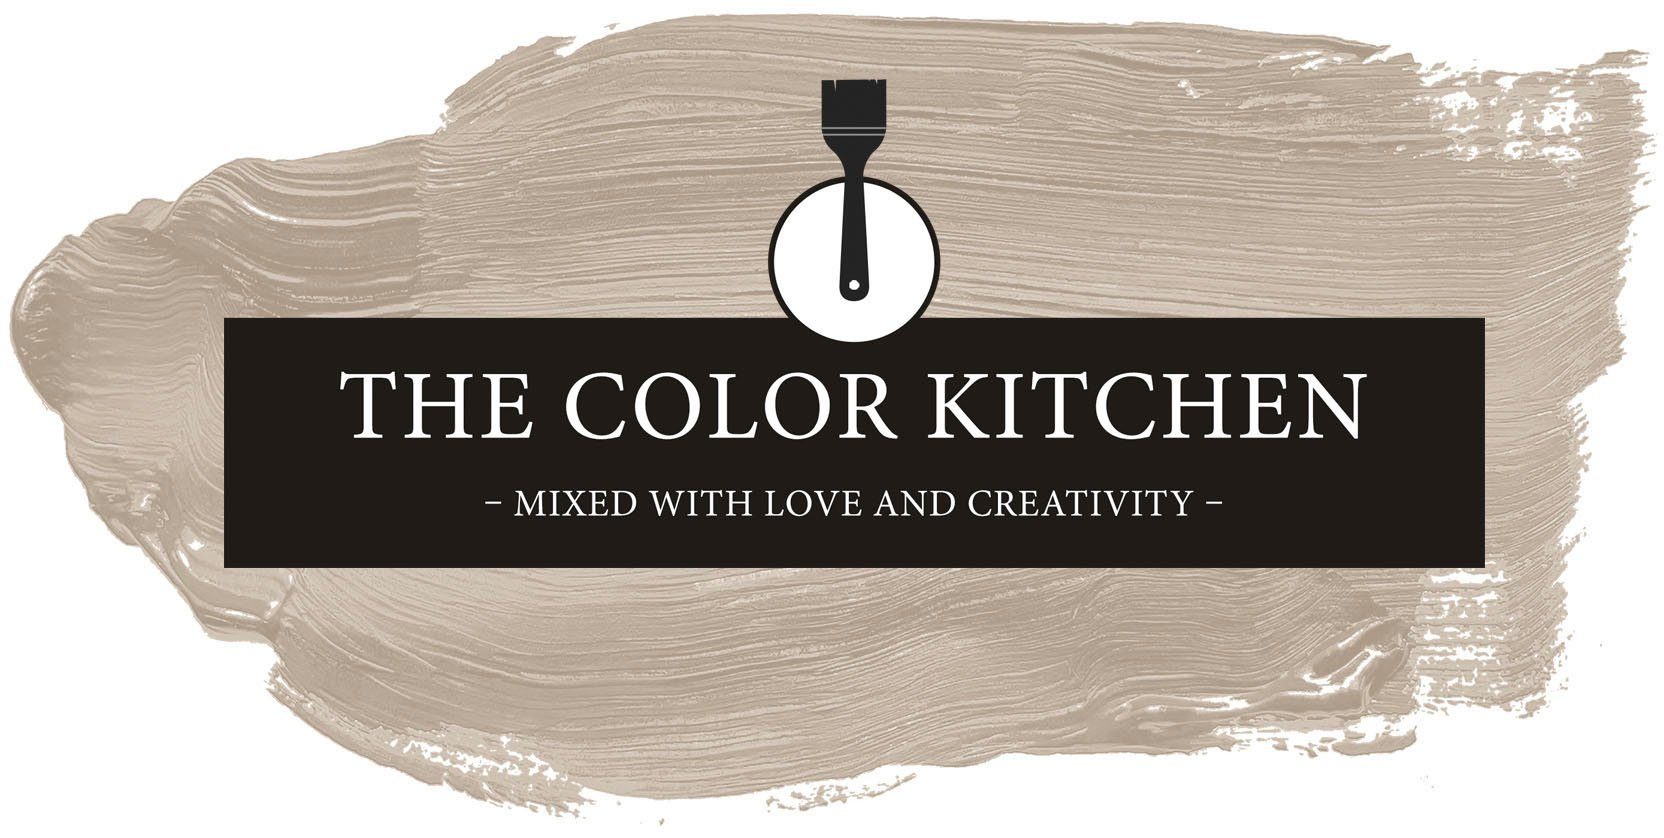 TCK6016 Küche, Innenfarbe A.S. Création Deckenfarbe und Seidenmatt KITCHEN, THE Beigetöne Wohnzimmer Schlafzimmer Wand- für Flur Seedy versch. COLOR Sunflower